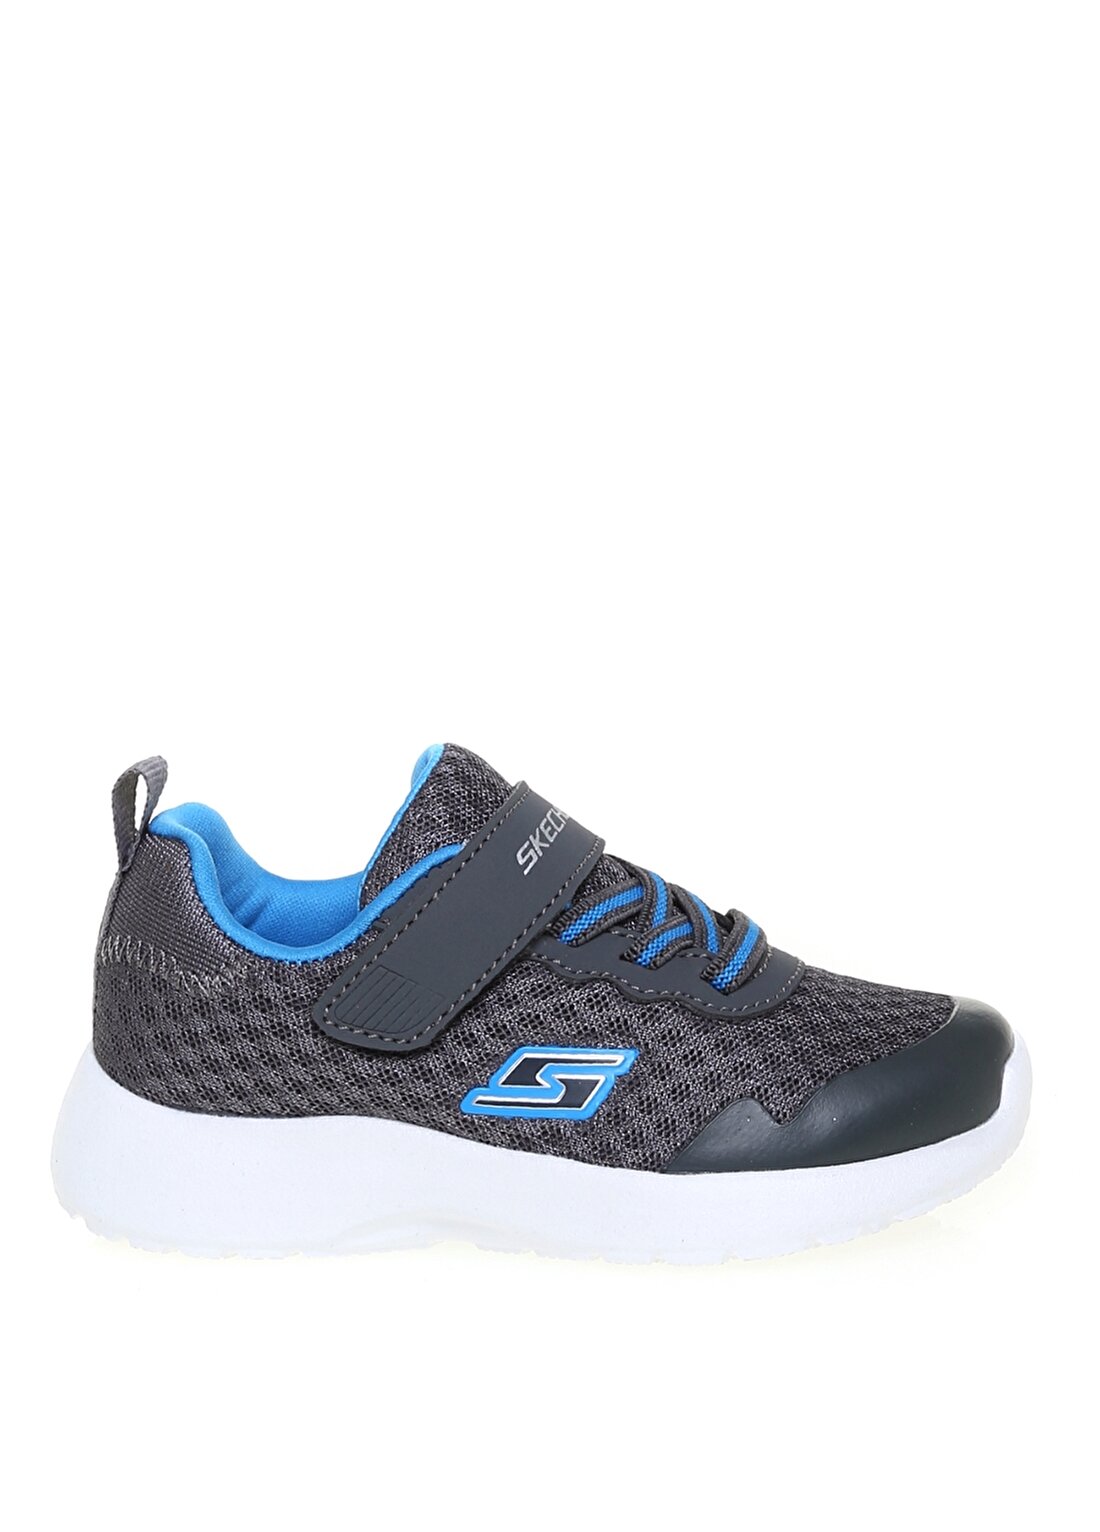 Skechers 97774N Ccbl Dynamight 2.0 Gri - Mavi Erkek Çocuk Yürüyüş Ayakkabısı